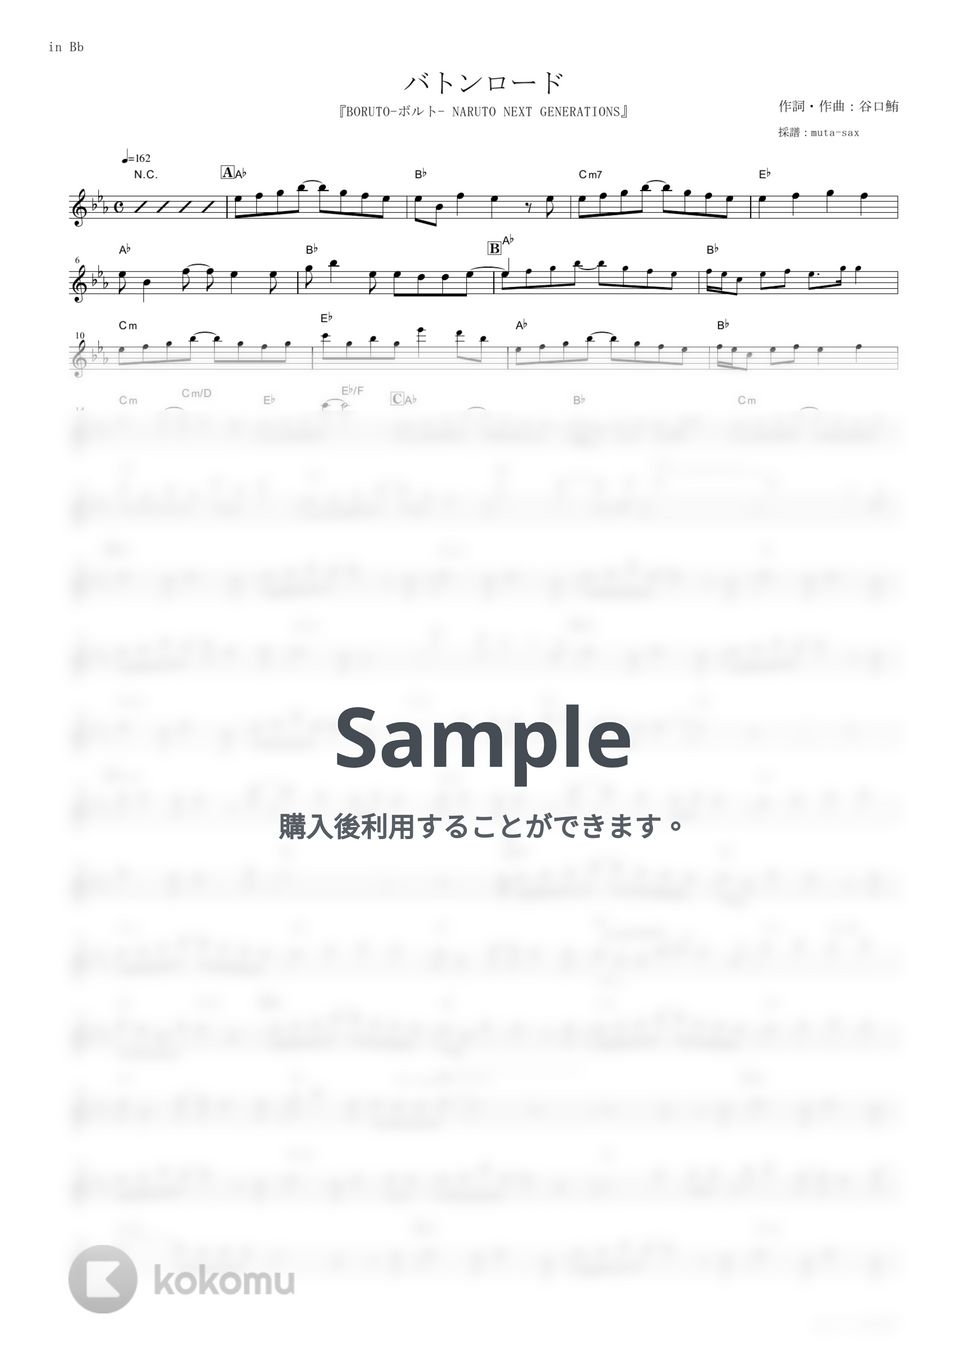 KANA-BOON - バトンロード (『BORUTO-ボルト- NARUTO NEXT GENERATIONS』 / in Bb) by muta-sax